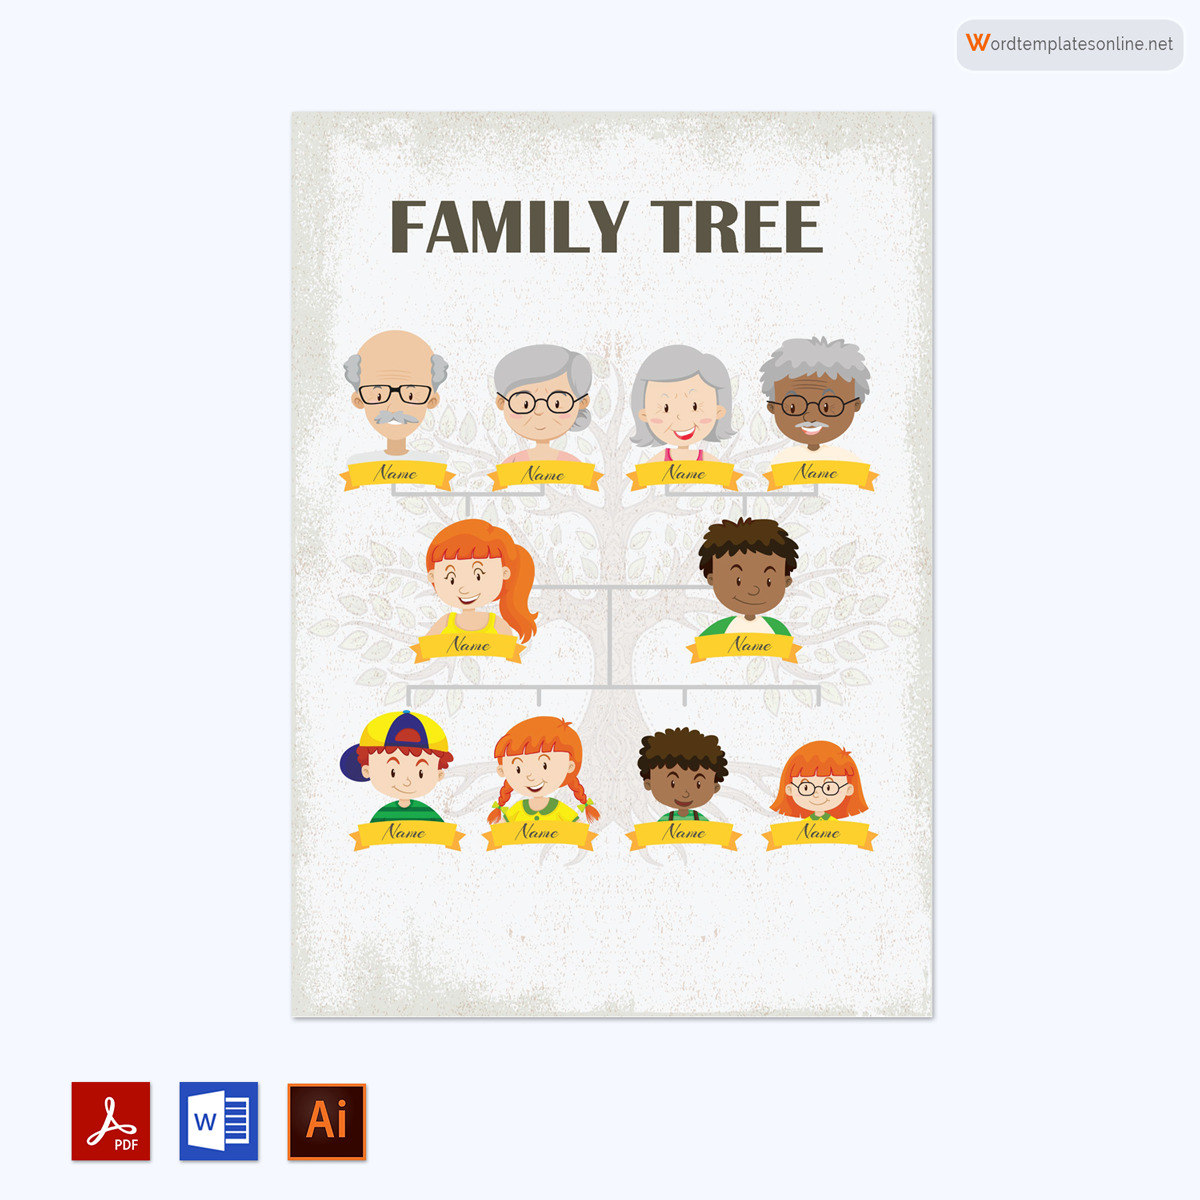  family tree template google docs 02